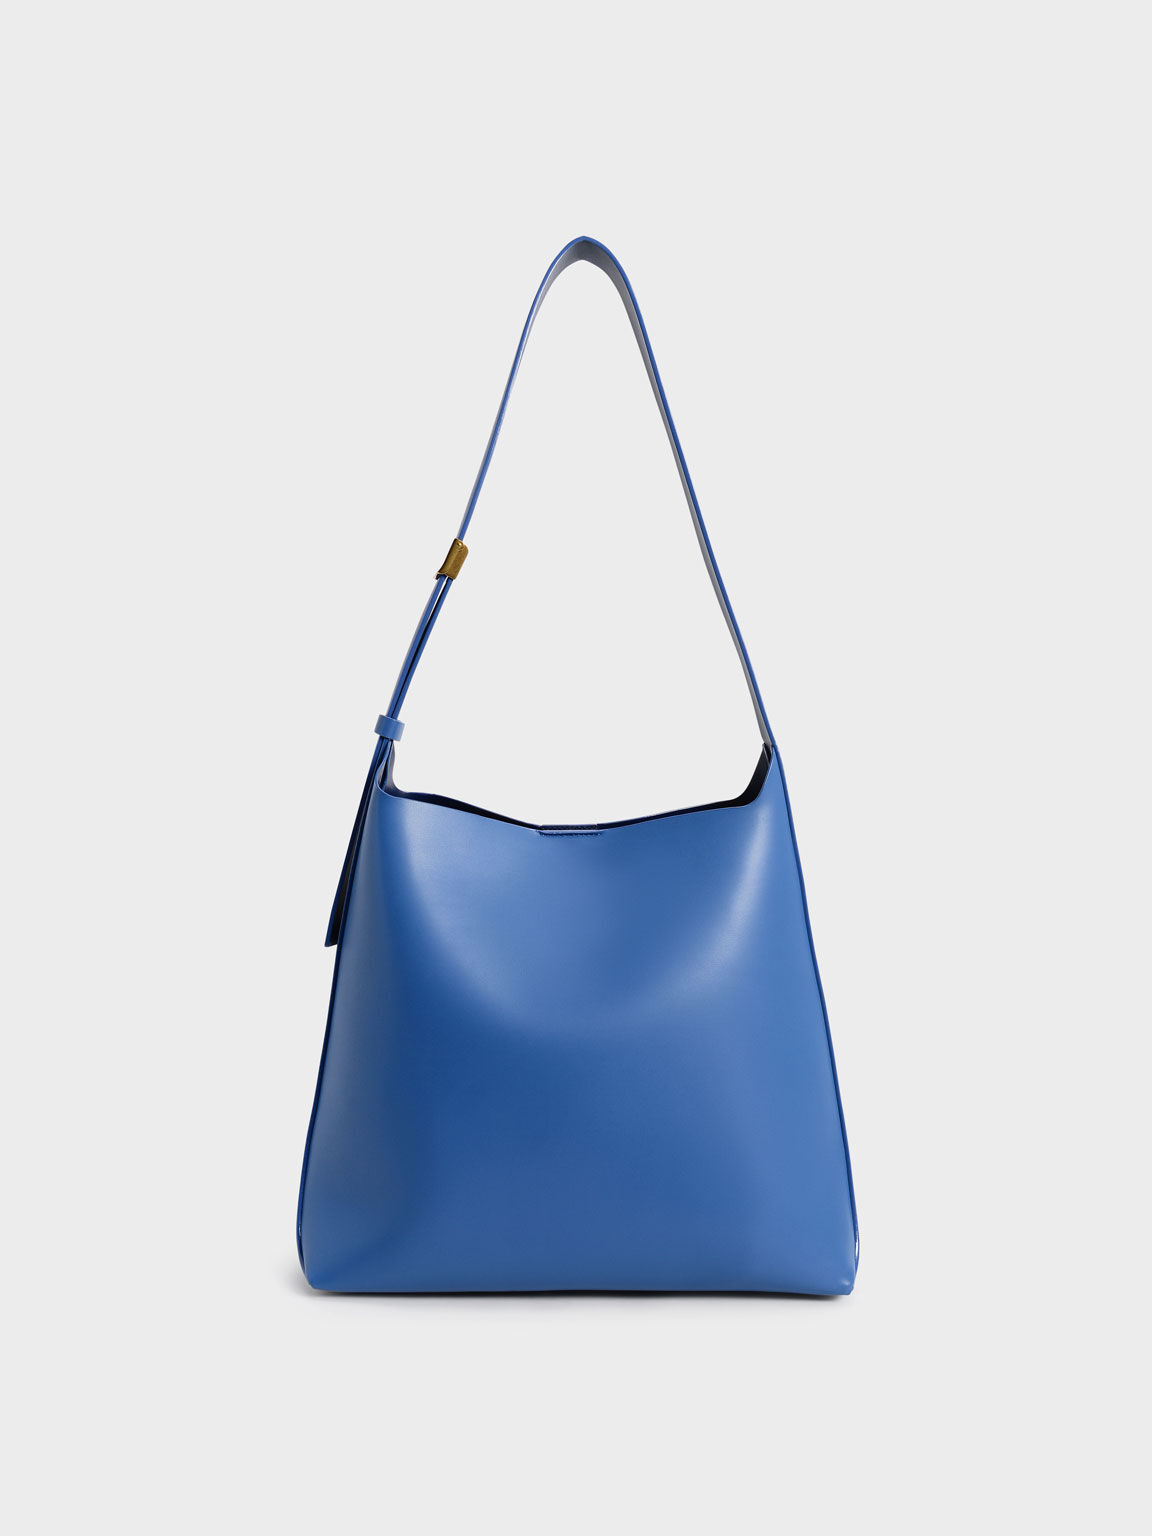 Edna Large Hobo Bag, Blue, hi-res